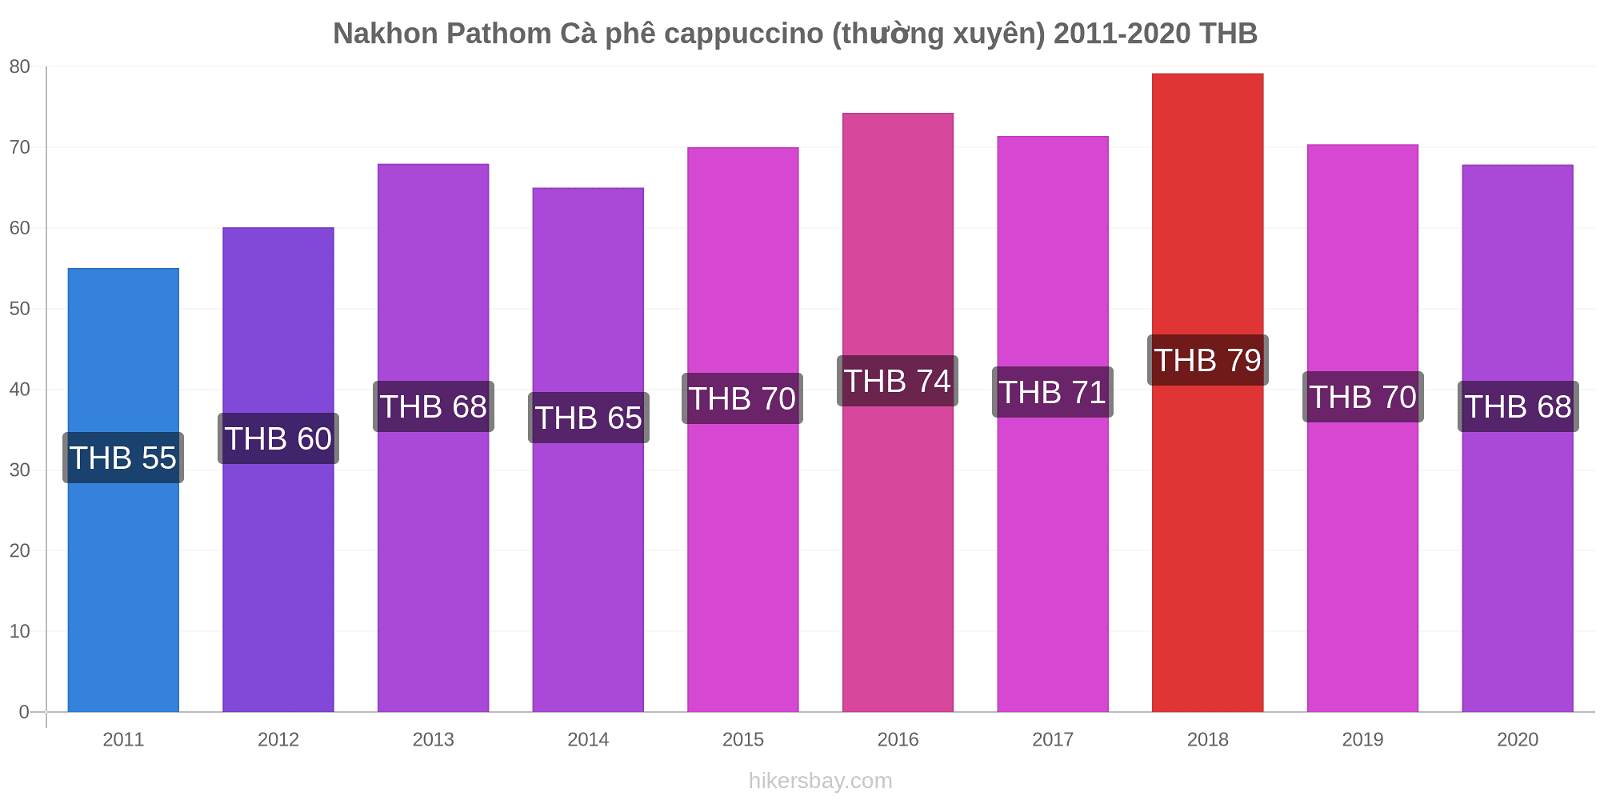 Nakhon Pathom thay đổi giá Cà phê cappuccino (thường xuyên) hikersbay.com